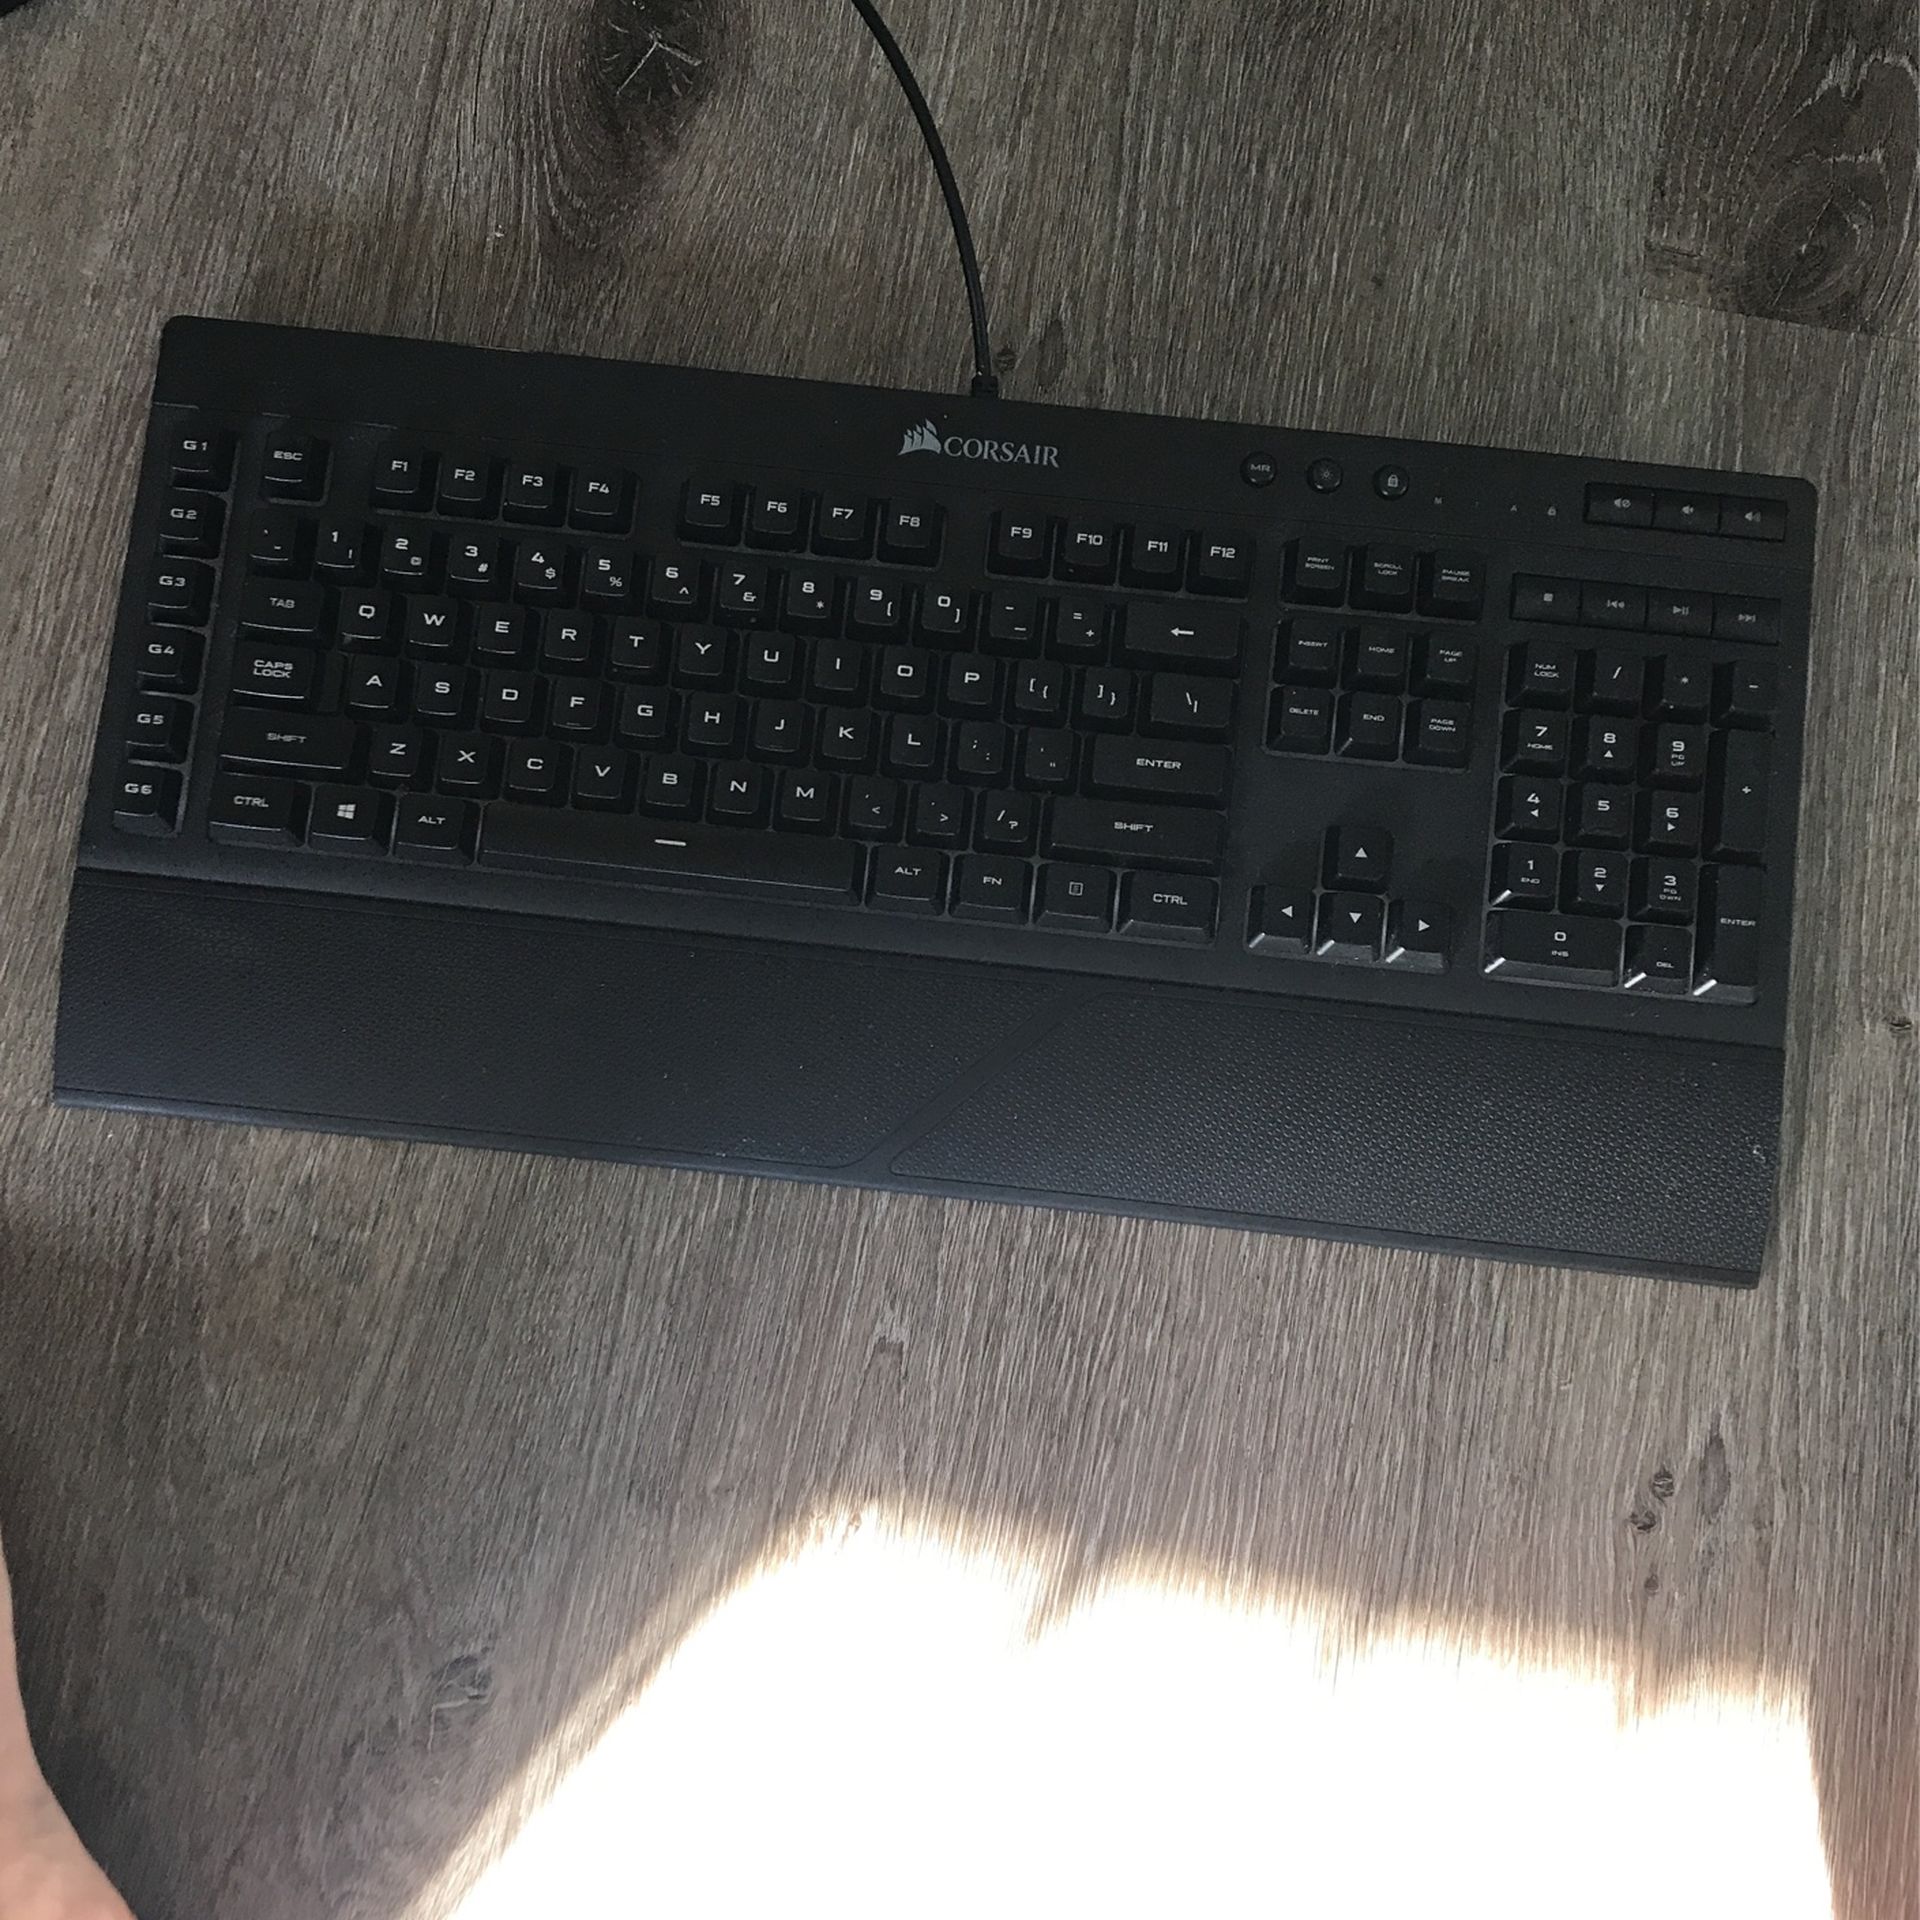 Corsair Gaming Keyboard (membrane)